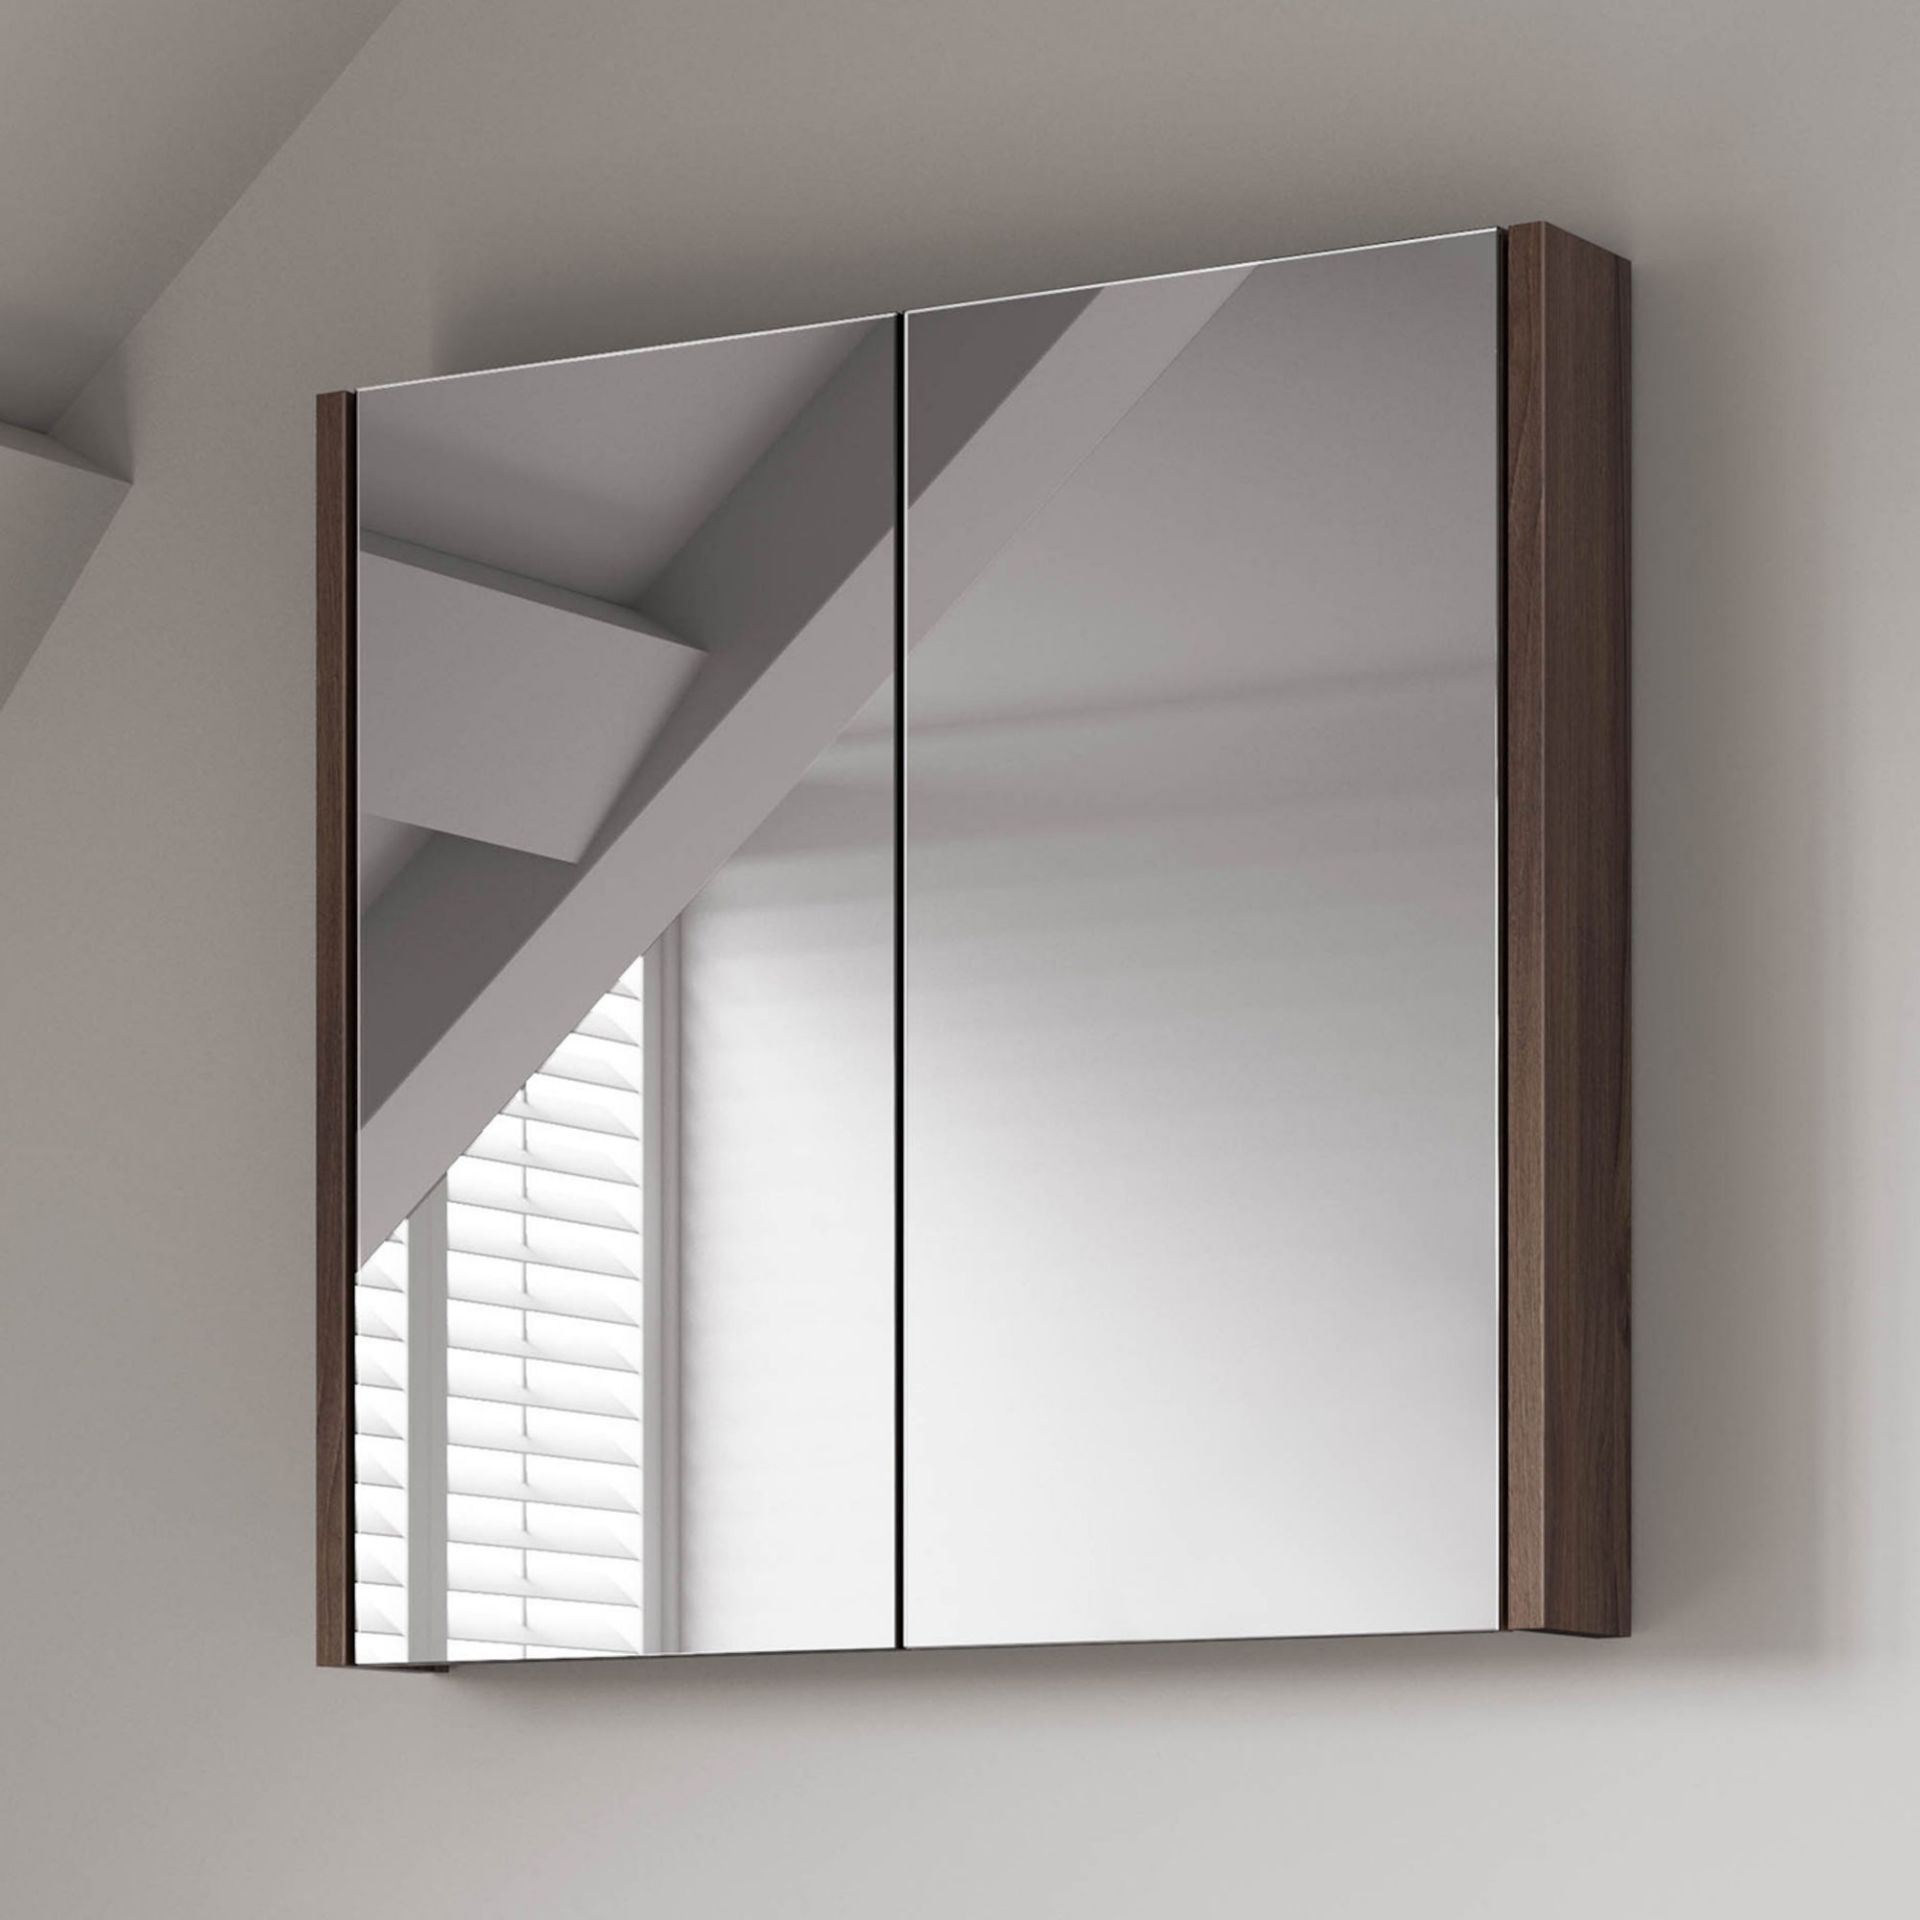 (RK200) 600mm Walnut Effect Double Door Mirror Cabinet Sleek contemporary design Double door ...